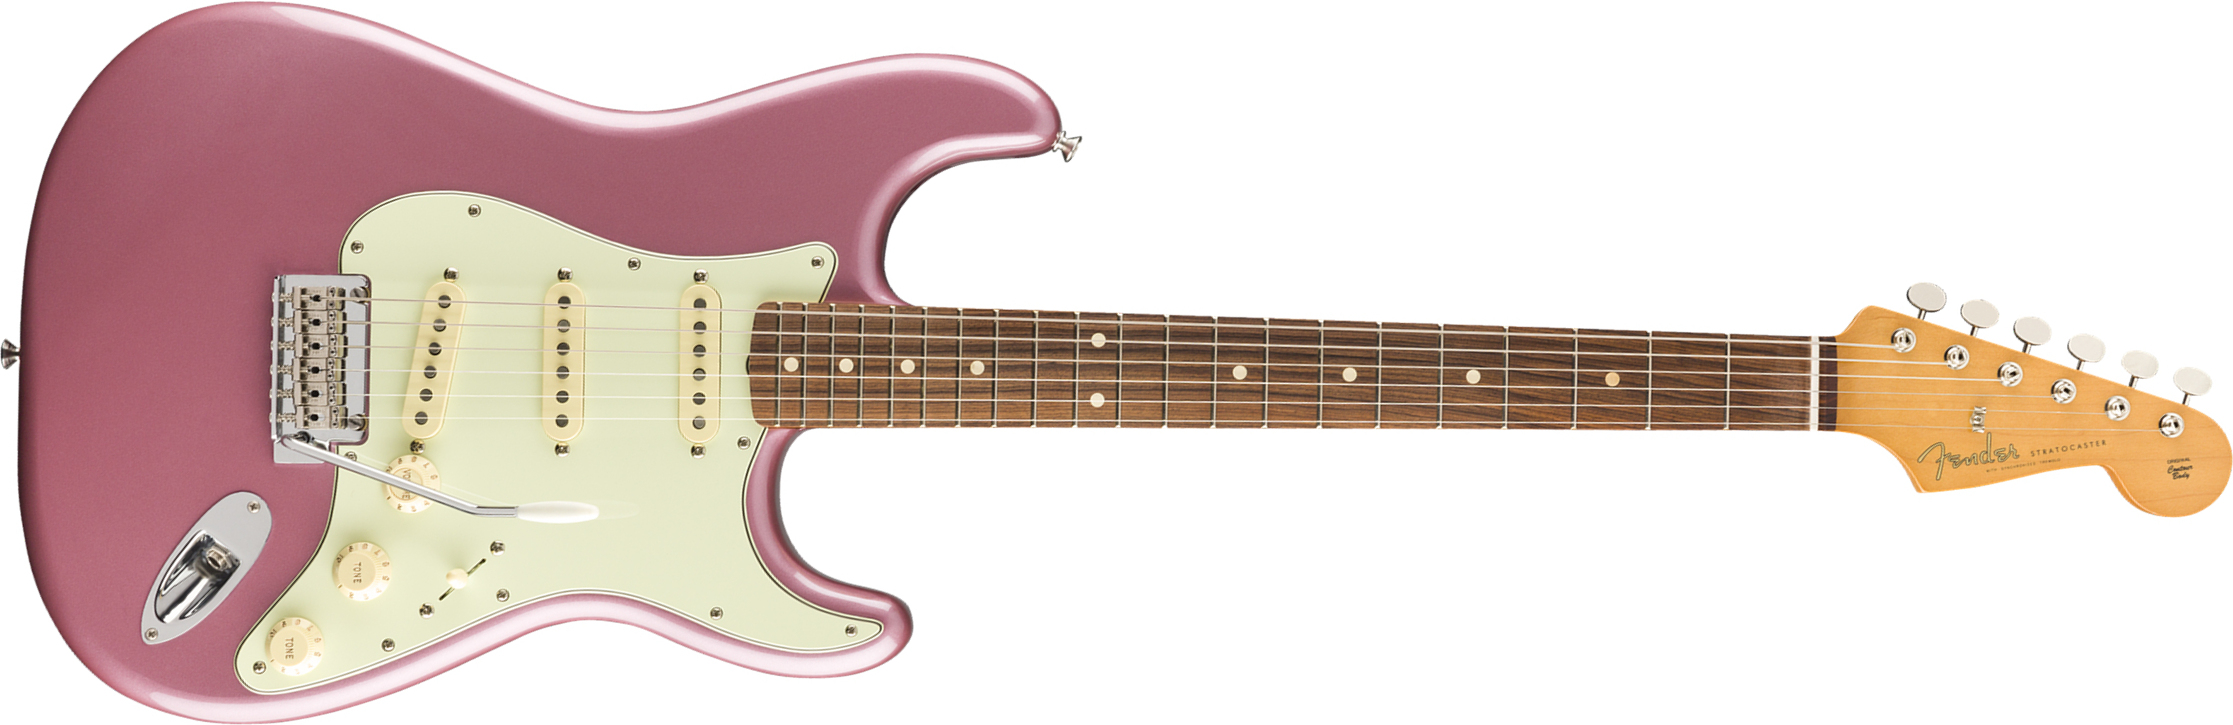 Fender Strat 60s Vintera Modified Mex Mn - Burgundy Mist - Elektrische gitaar in Str-vorm - Main picture